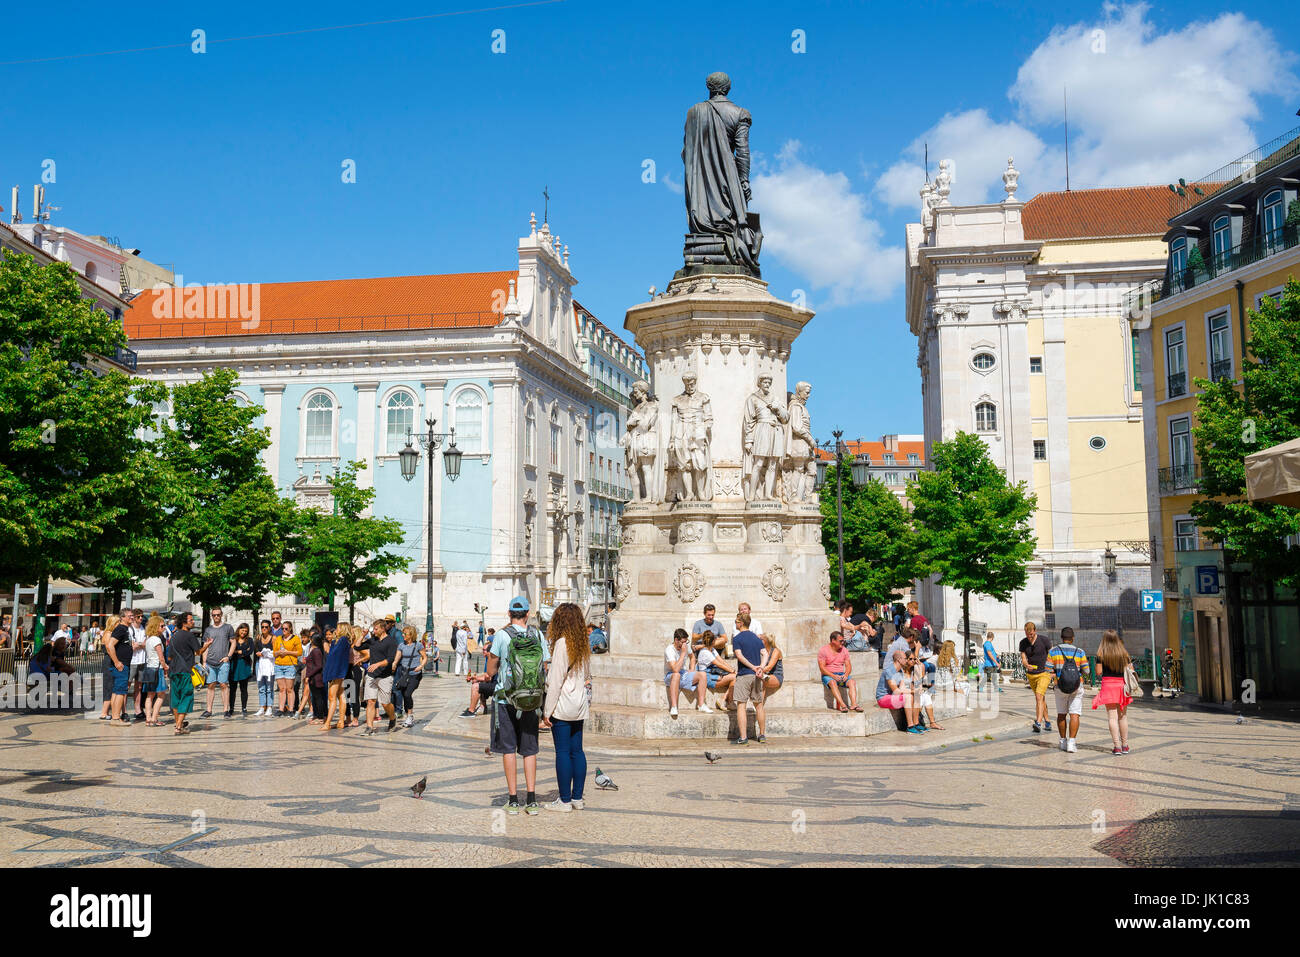 Place de Lisbonne, vue sur la place Praca Luis de Camoes située entre les quartiers de Chiado et Bairro Alto dans le centre de Lisbonne, Portugal. Banque D'Images